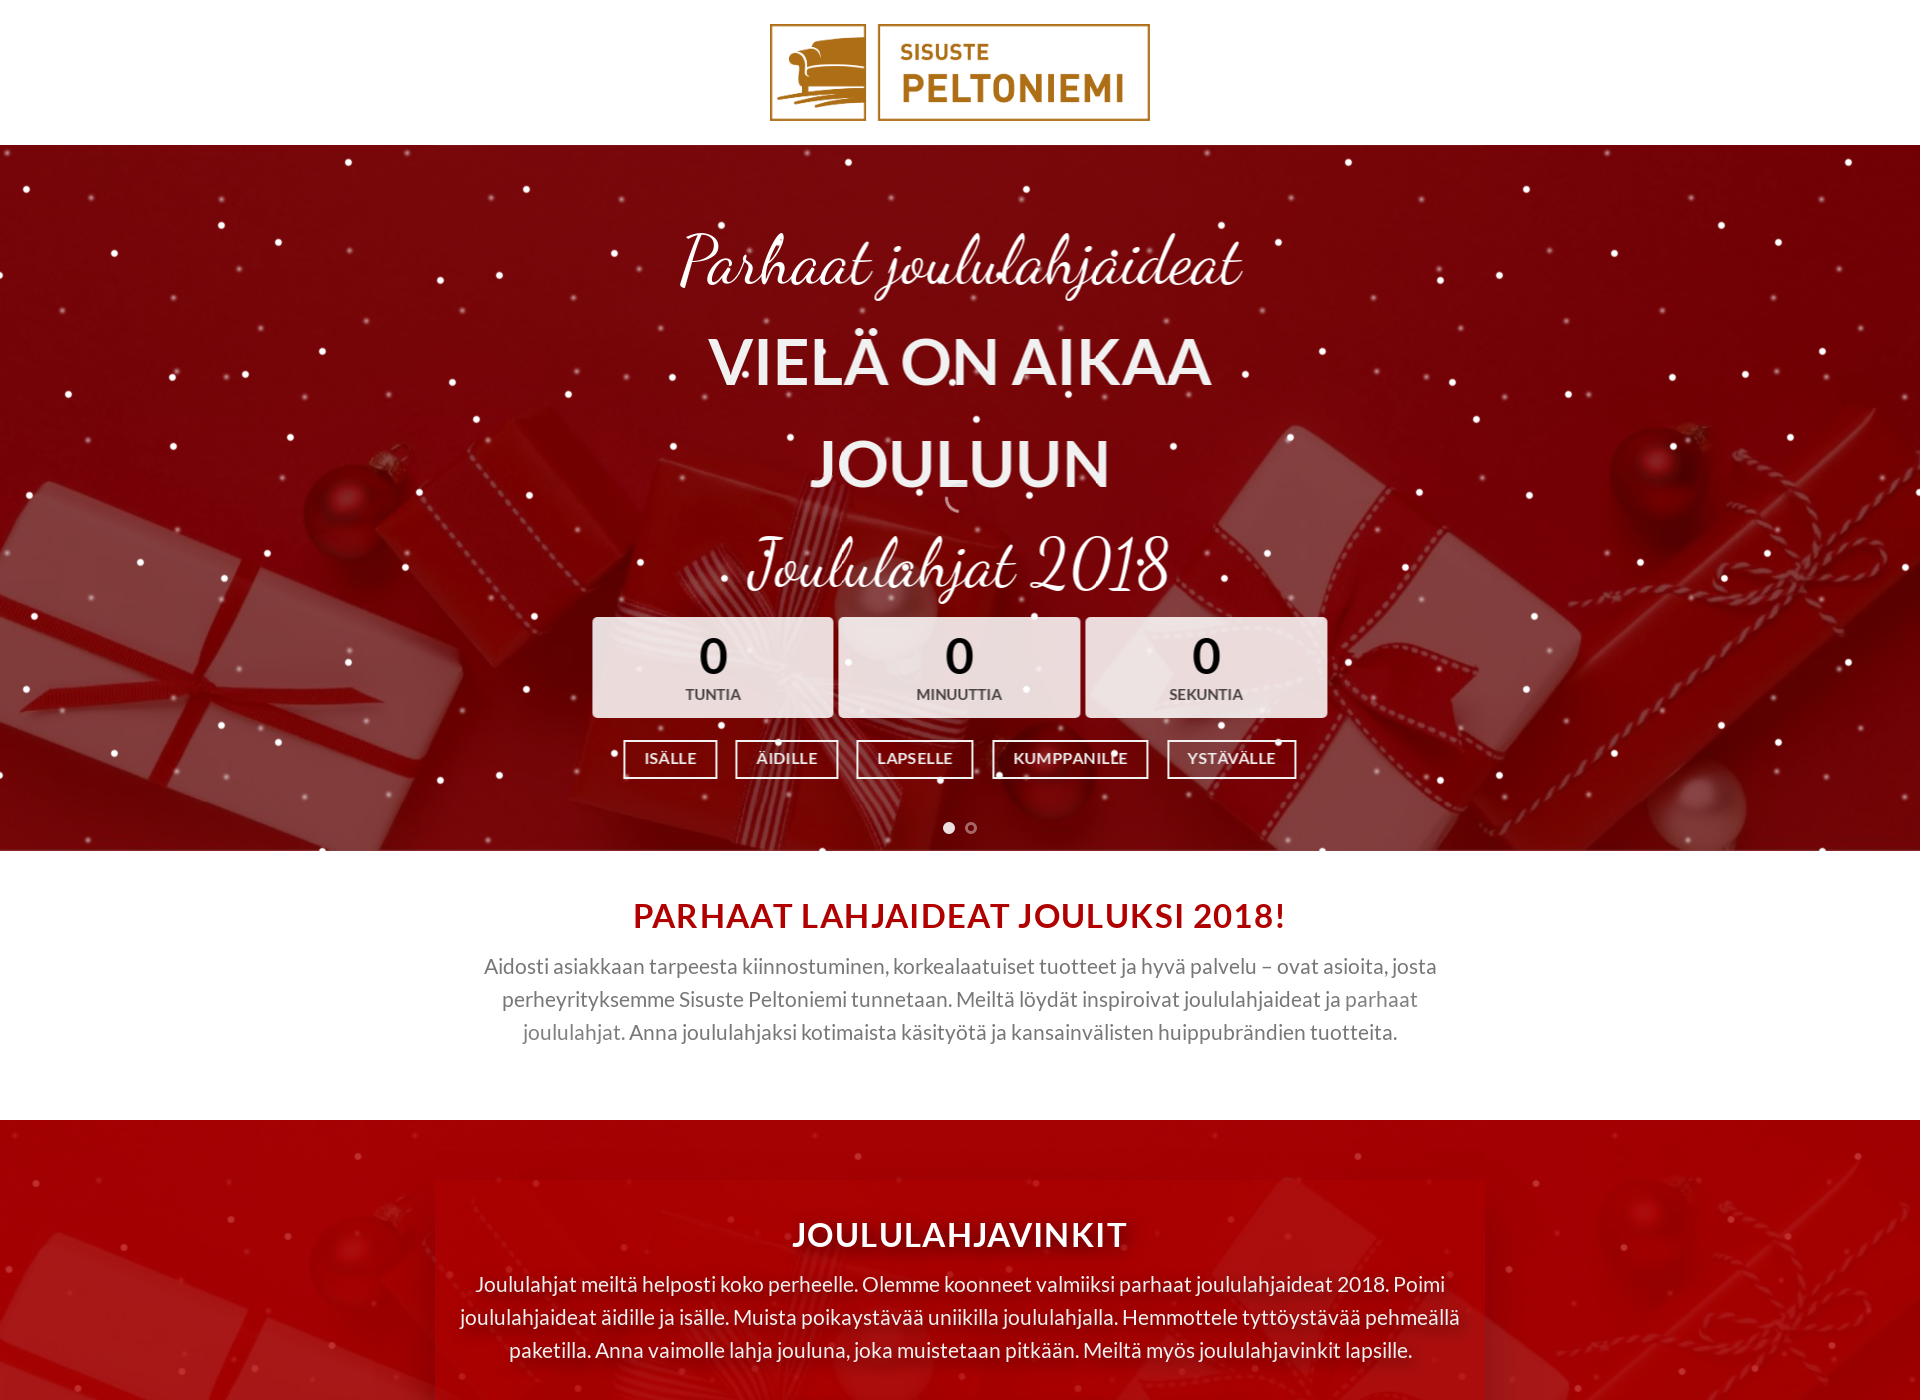 Näyttökuva joululahjat2018.fi